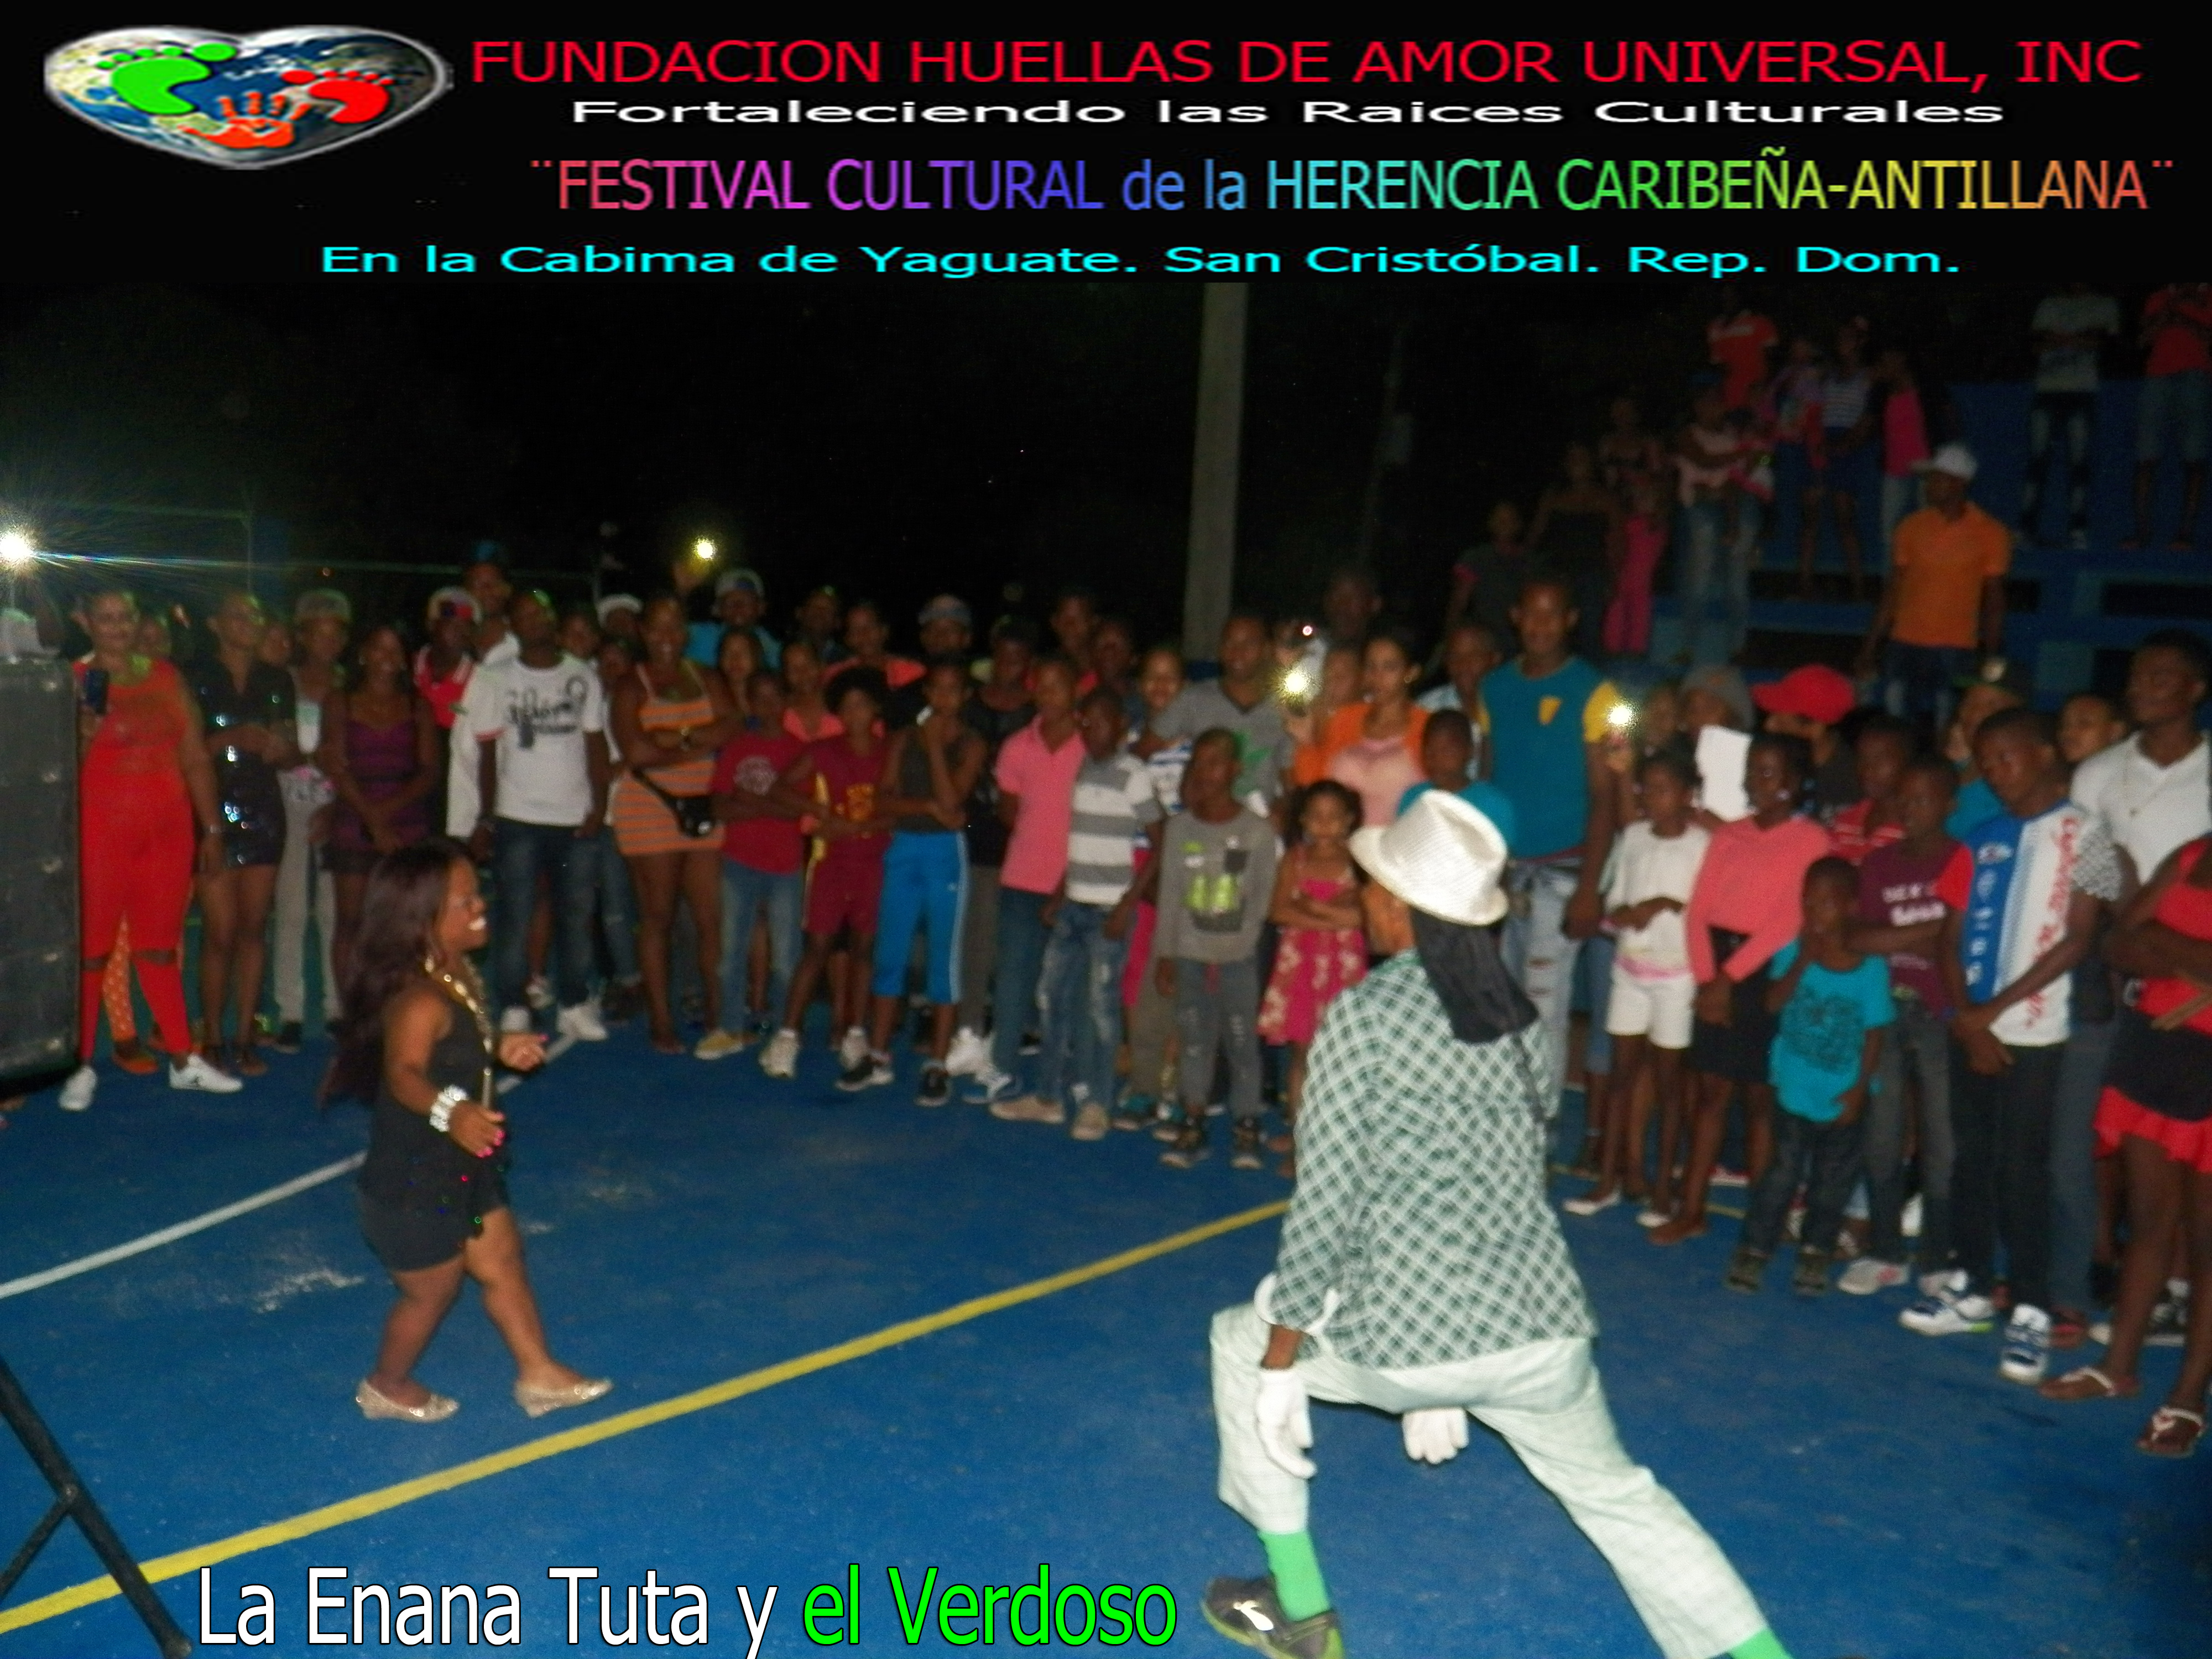 FUNDACIÓN HUELLAS DE AMOR UNIVERSAL REALIZO EL II FESTIVAL CULTURAL DE LA HERENCIA CARIBEÑA-ANTILLAN